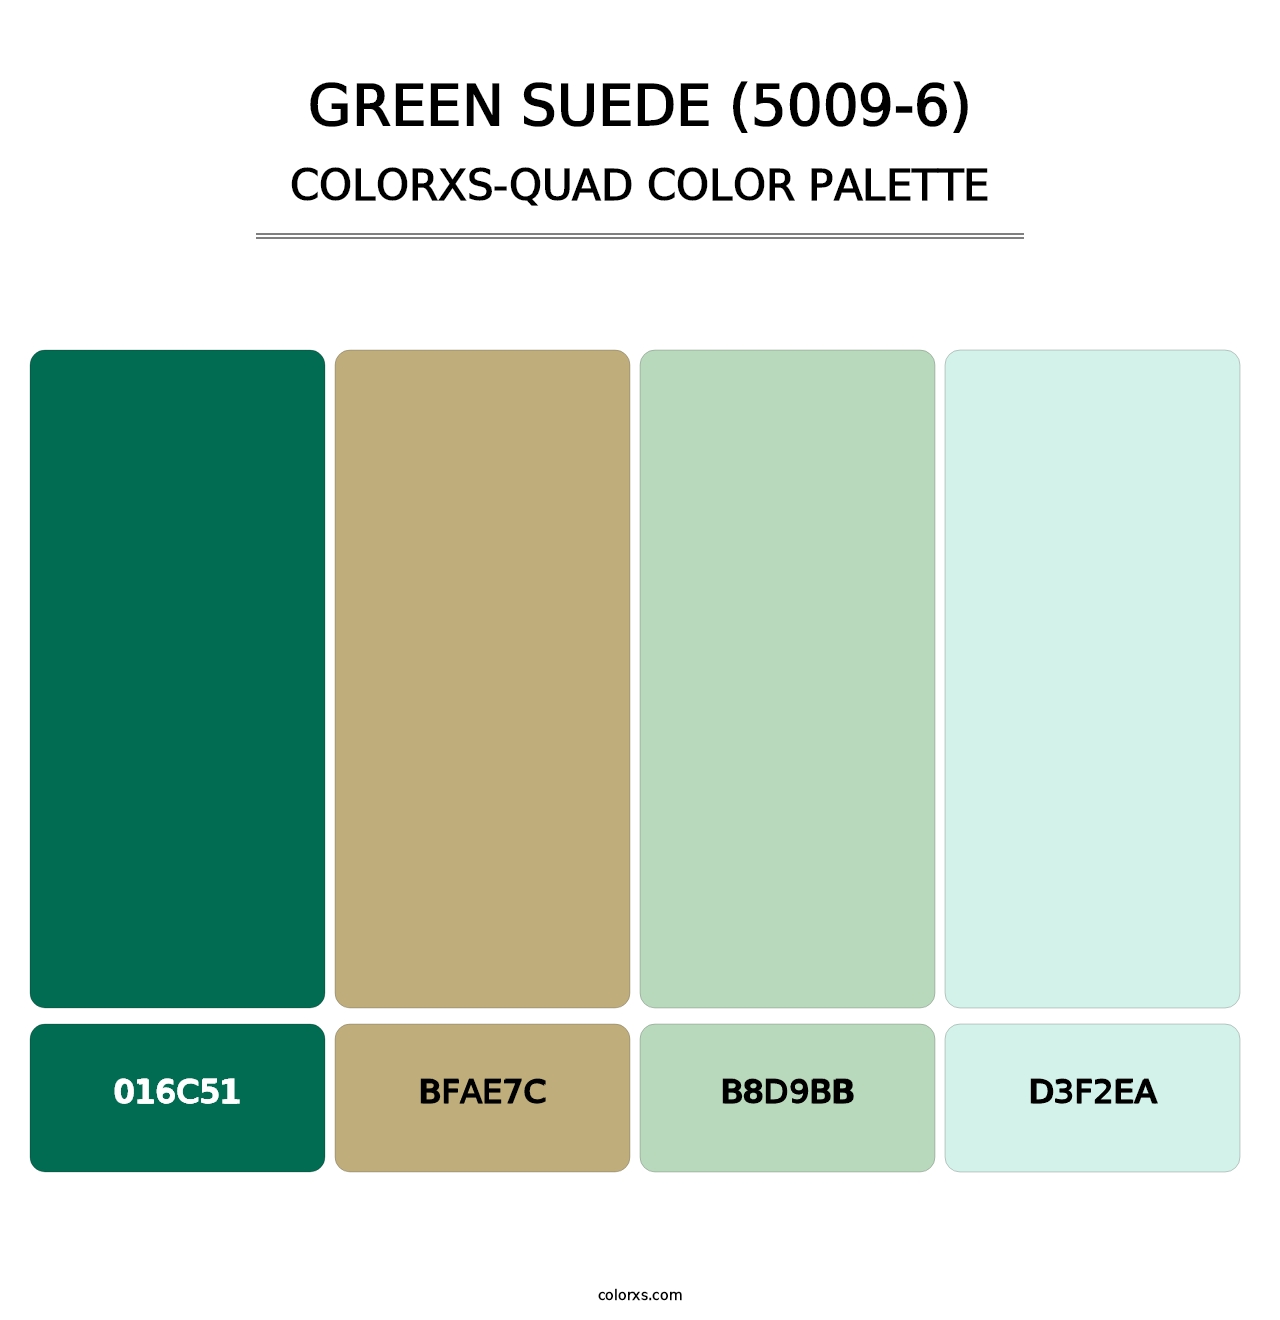 Green Suede (5009-6) - Colorxs Quad Palette